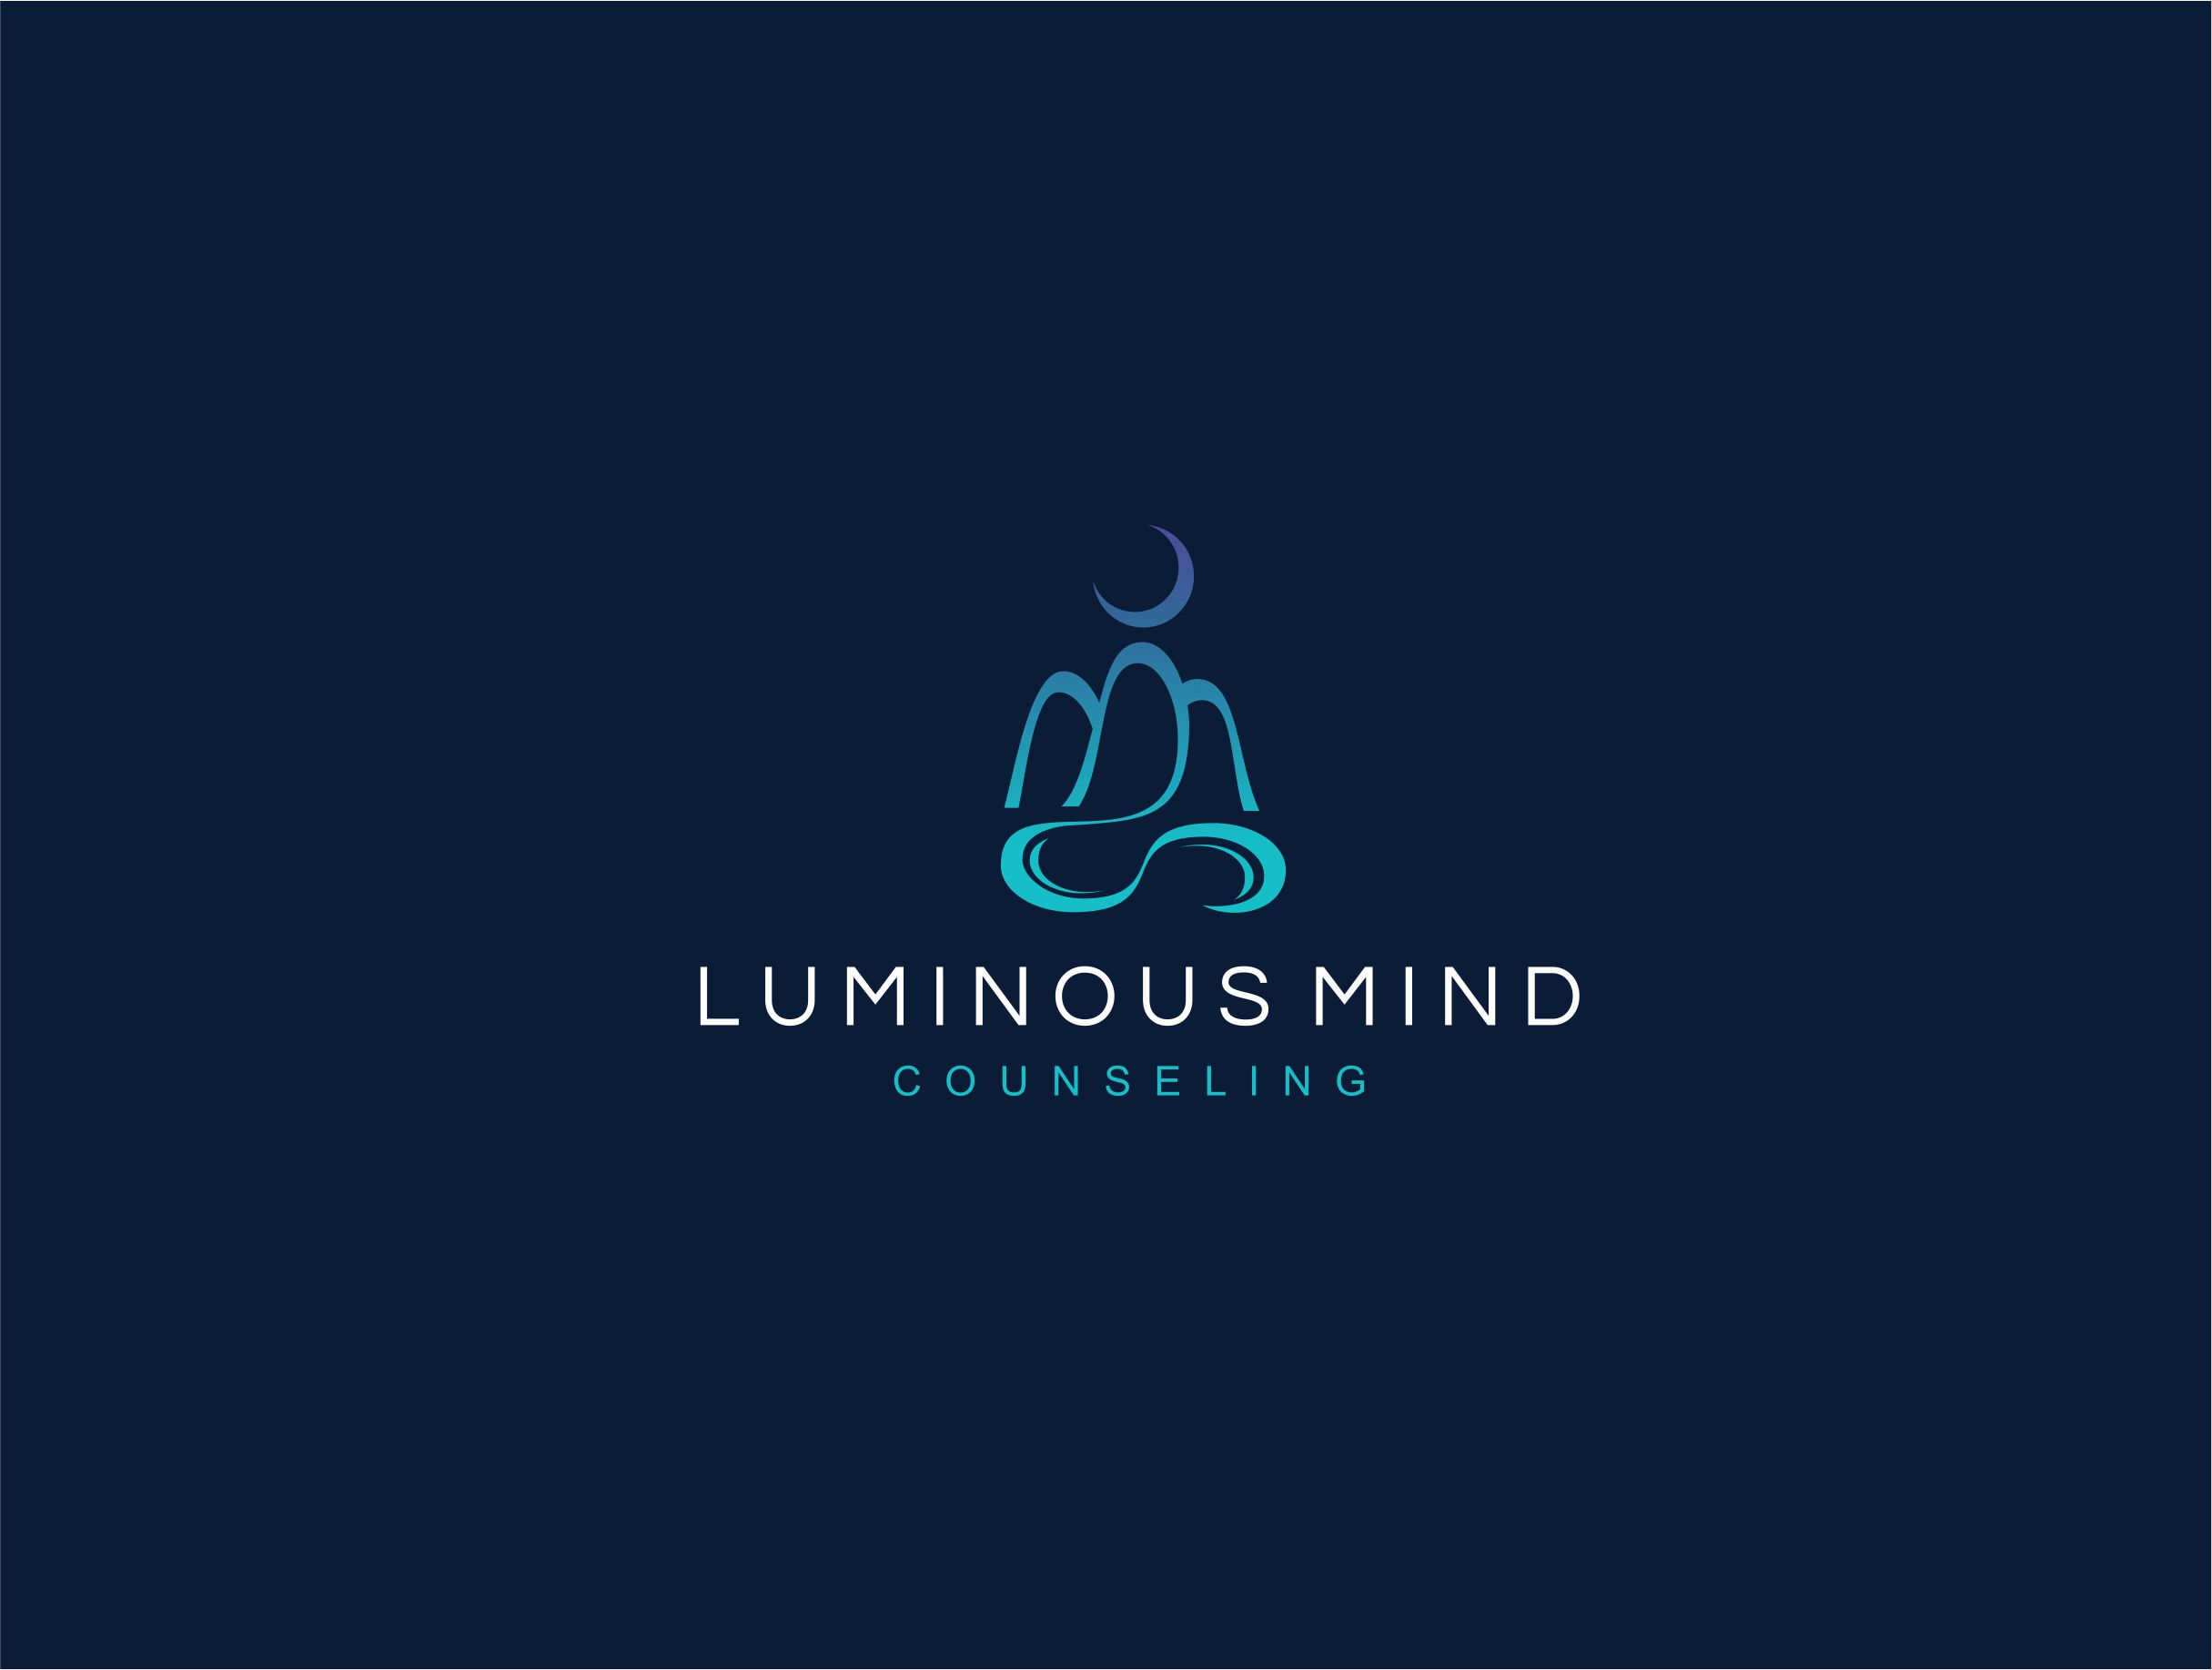 Luminous Mind Counseling